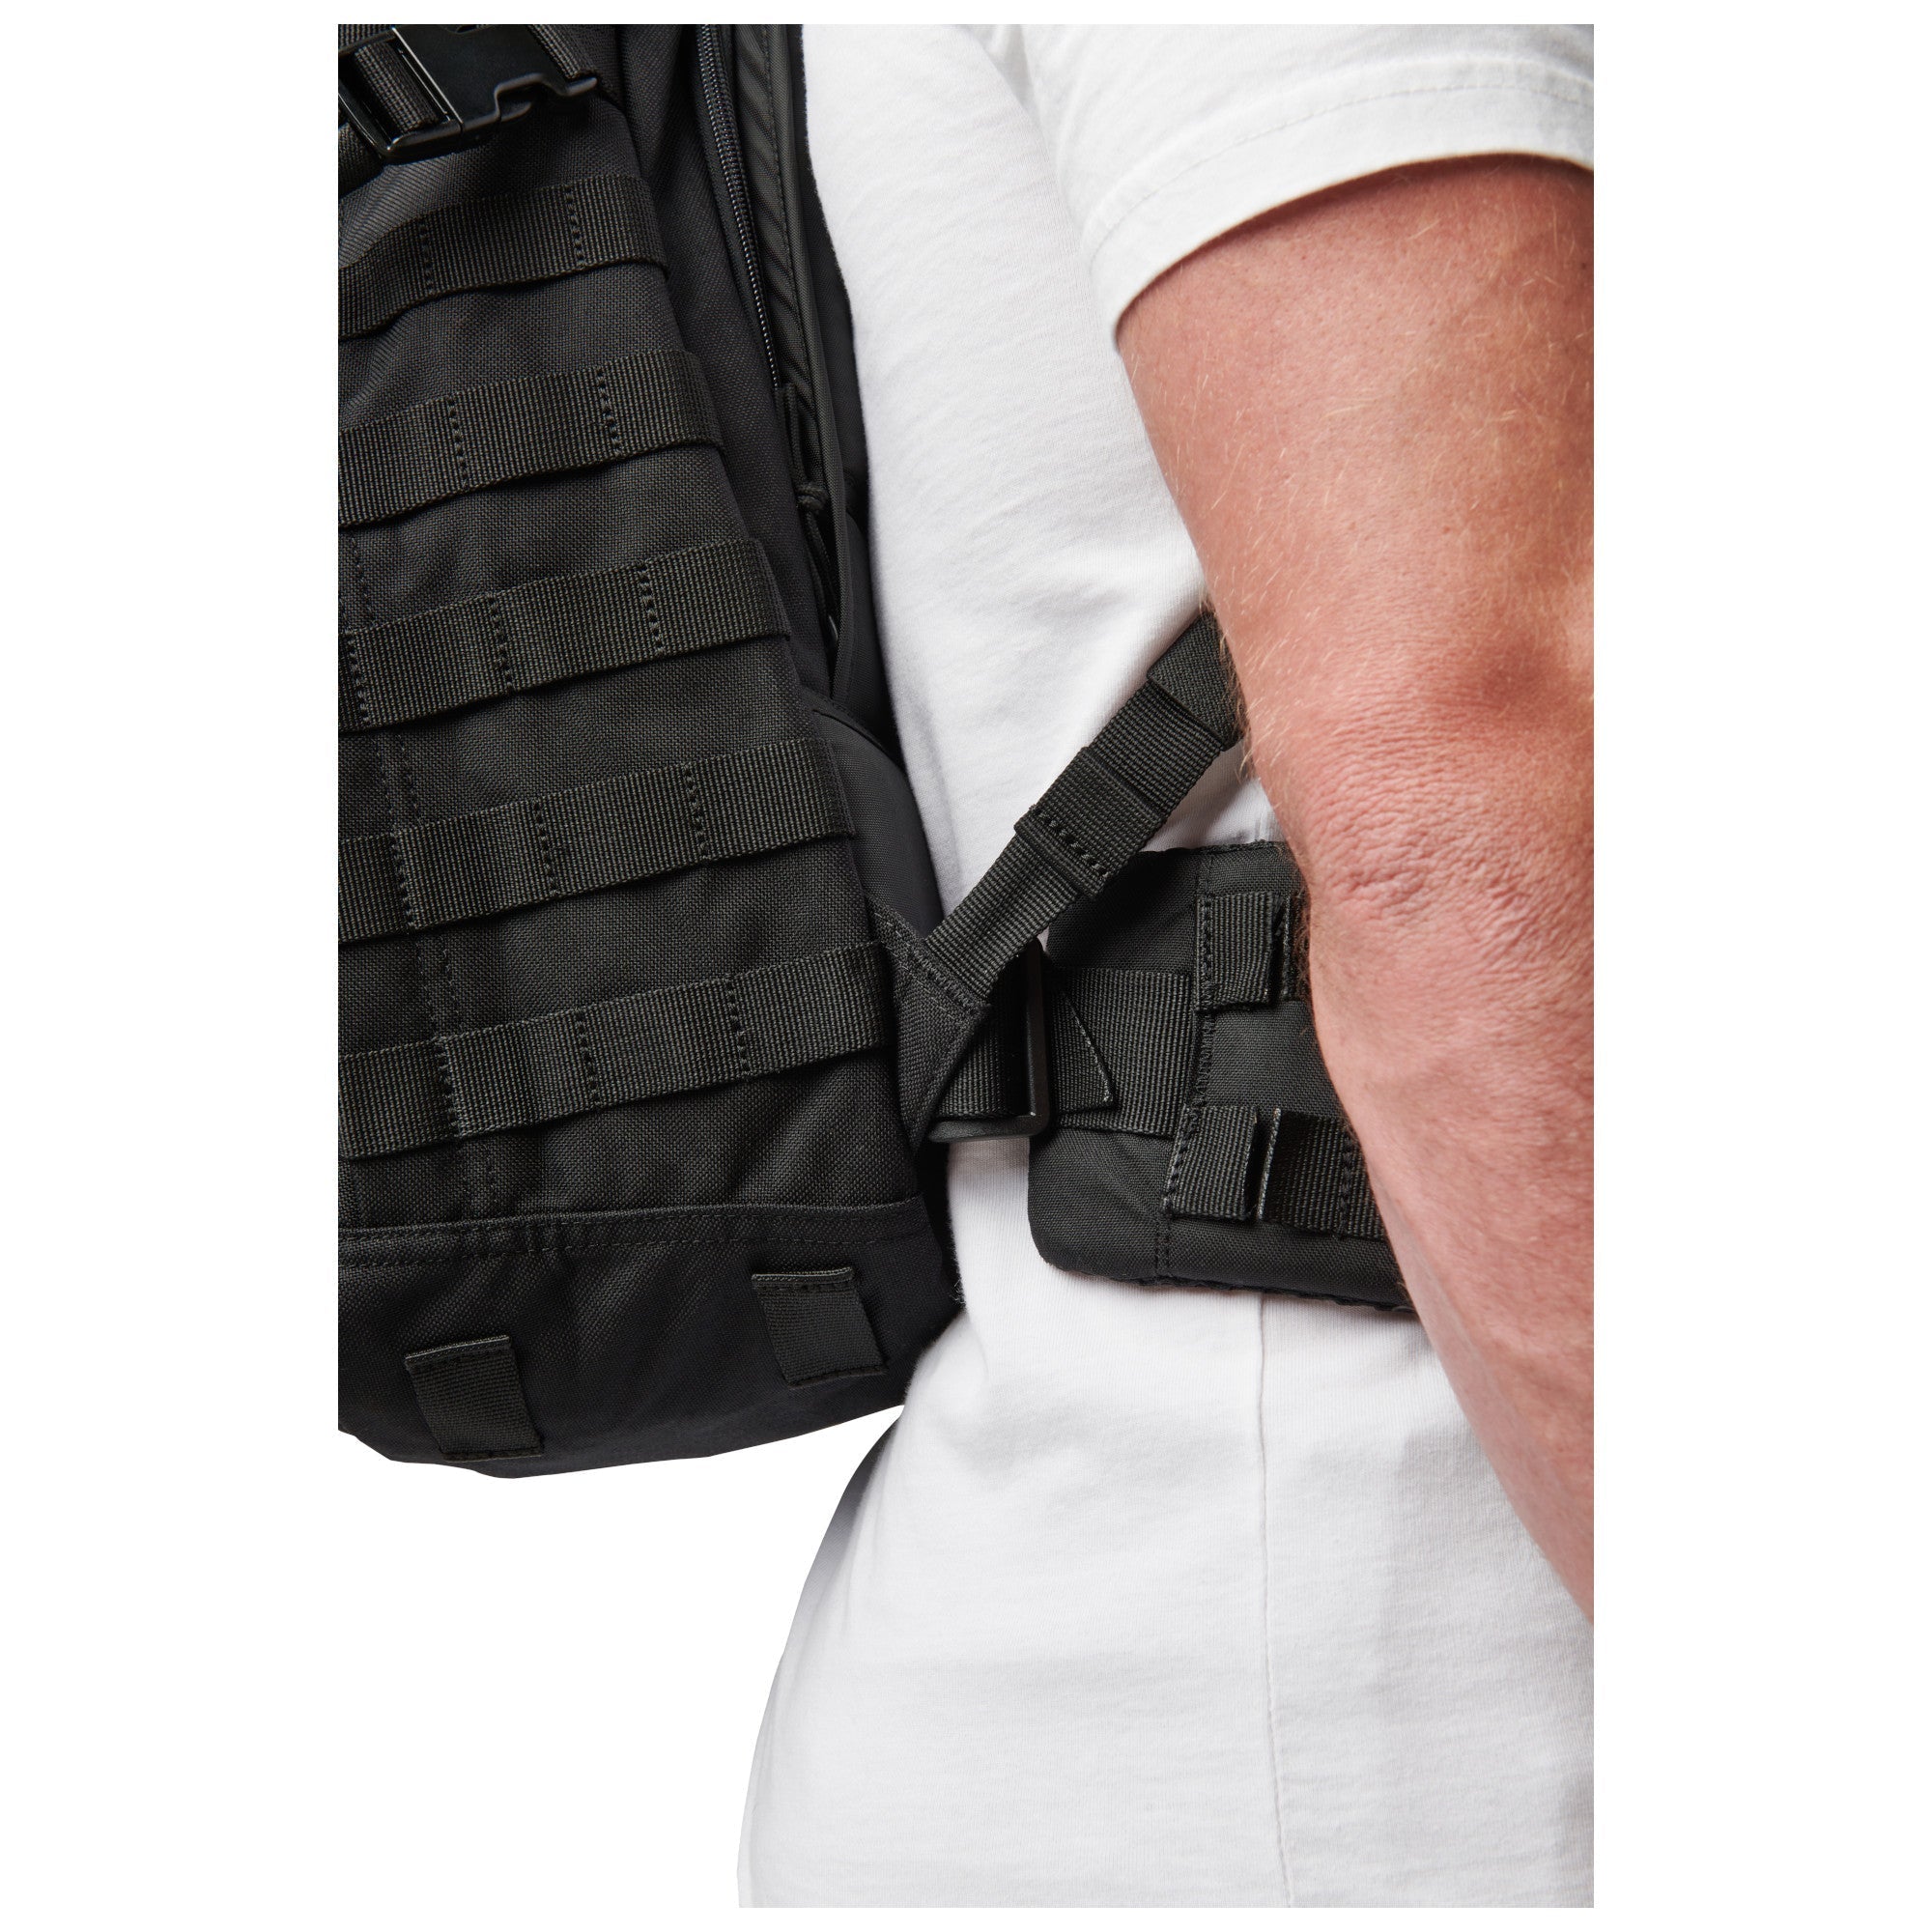 5.11 Tactical RUSH Belt Kit Accessories 5.11 Tactical Tactical Gear Supplier Tactical Distributors Australia